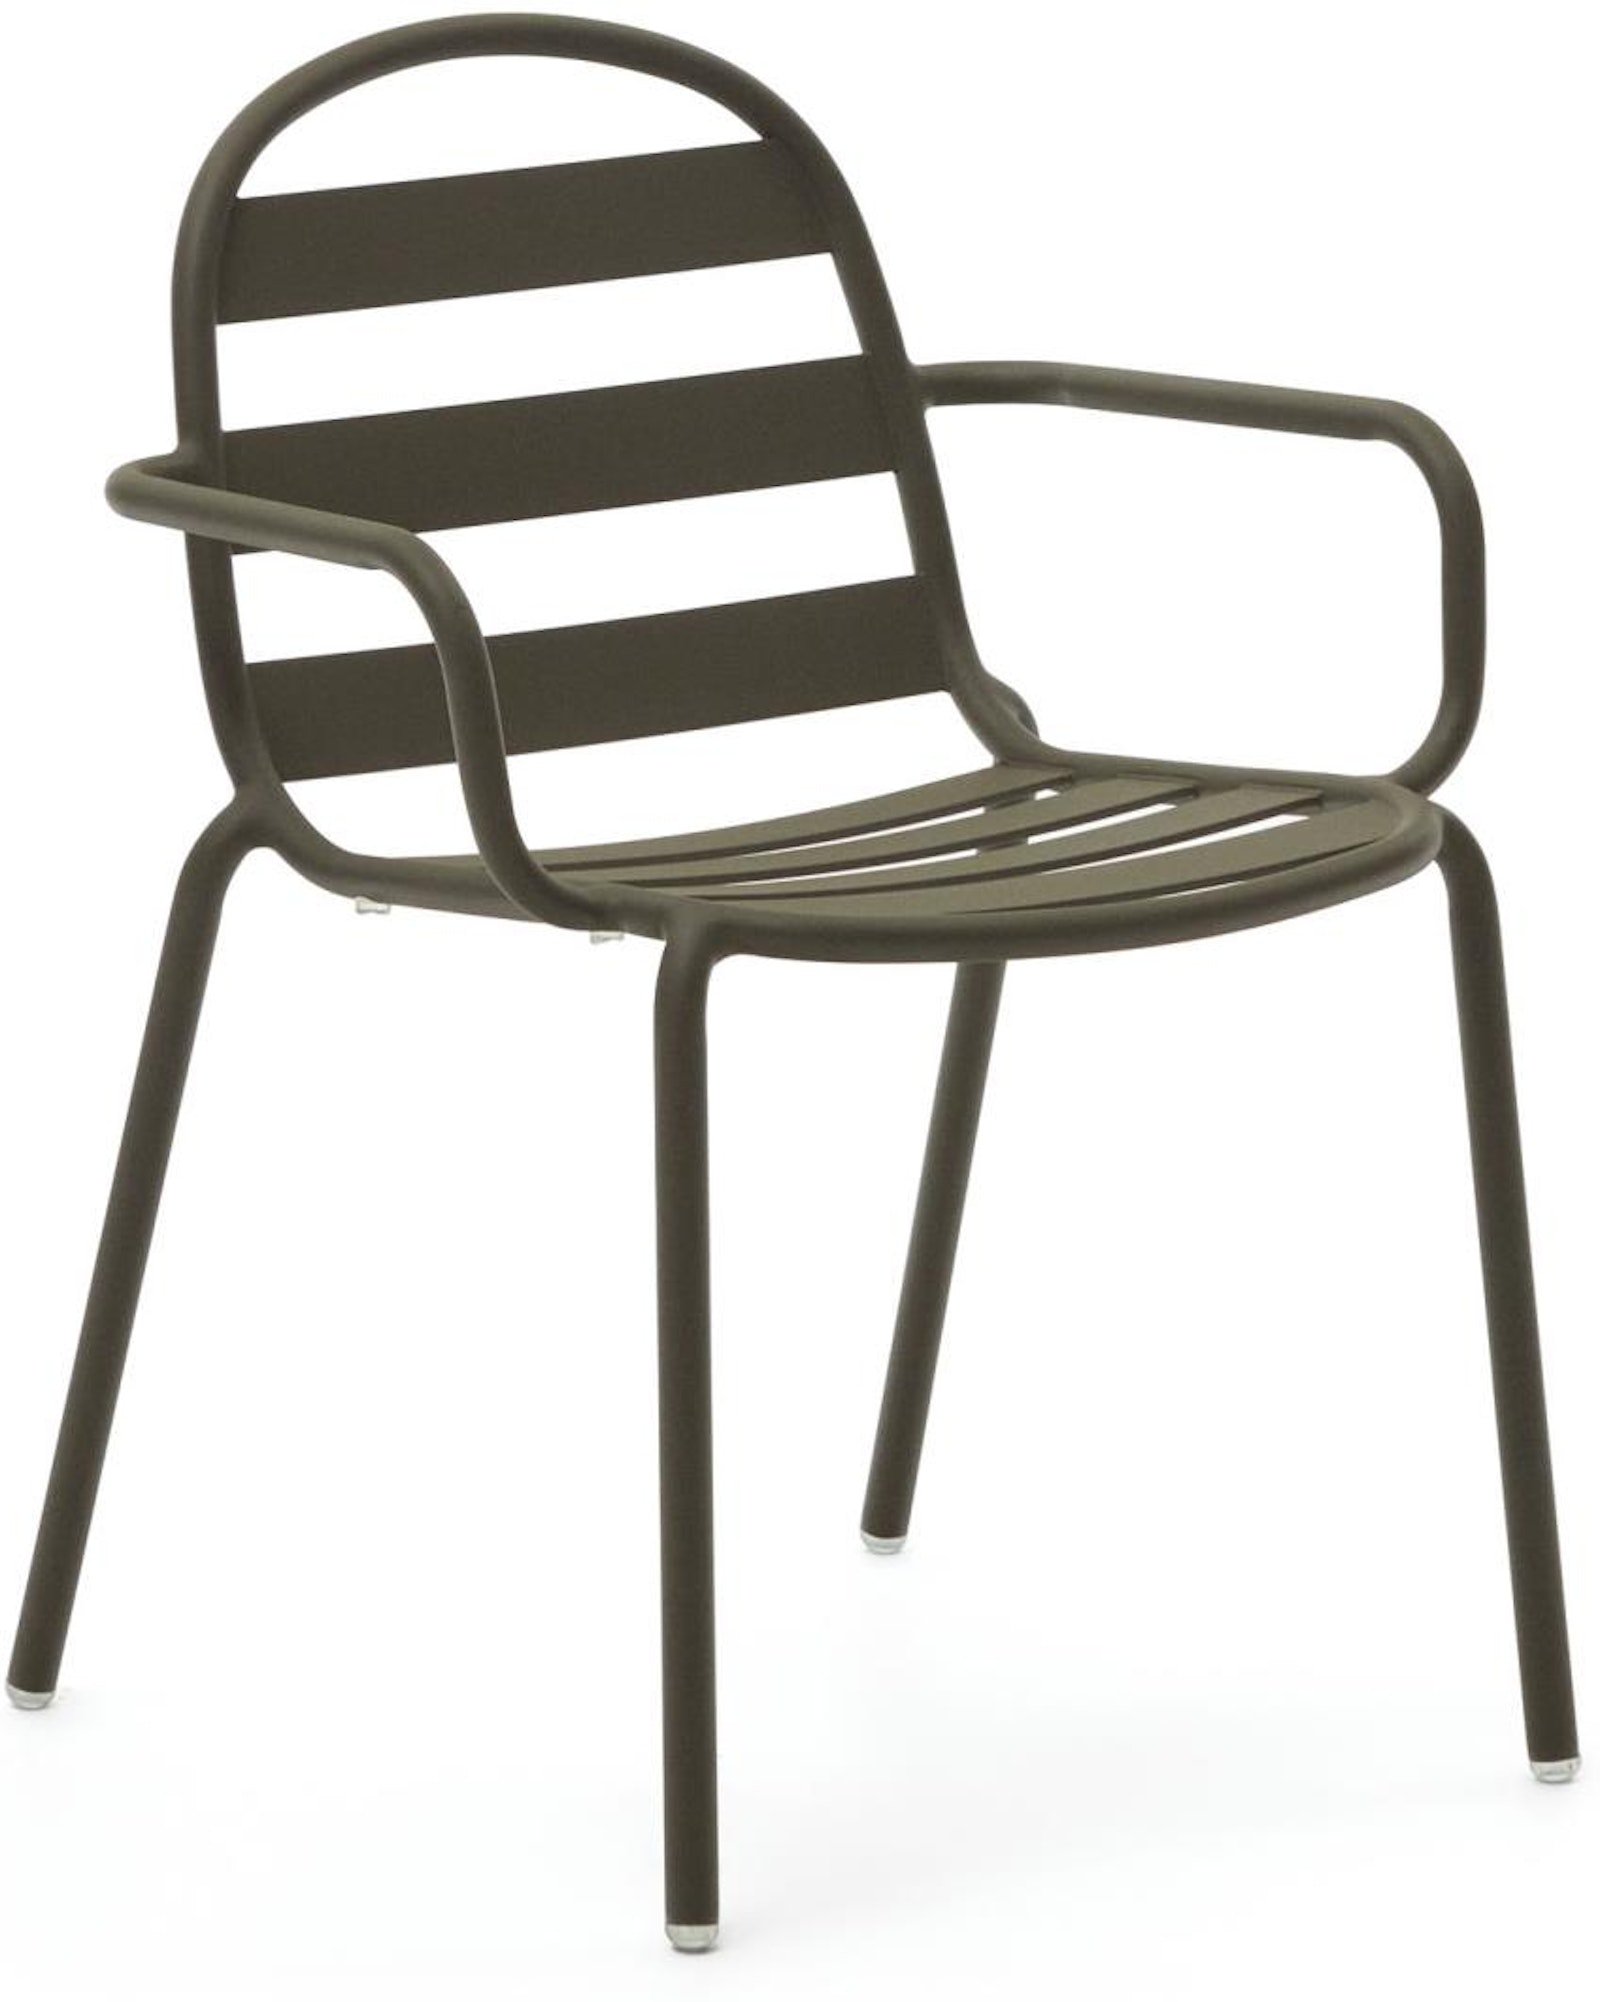 Joncols, Udendørs stol, moderne, nordisk, metal by Laforma (H: 82 cm. x B: 61 cm. x L: 58 cm., Grøn)